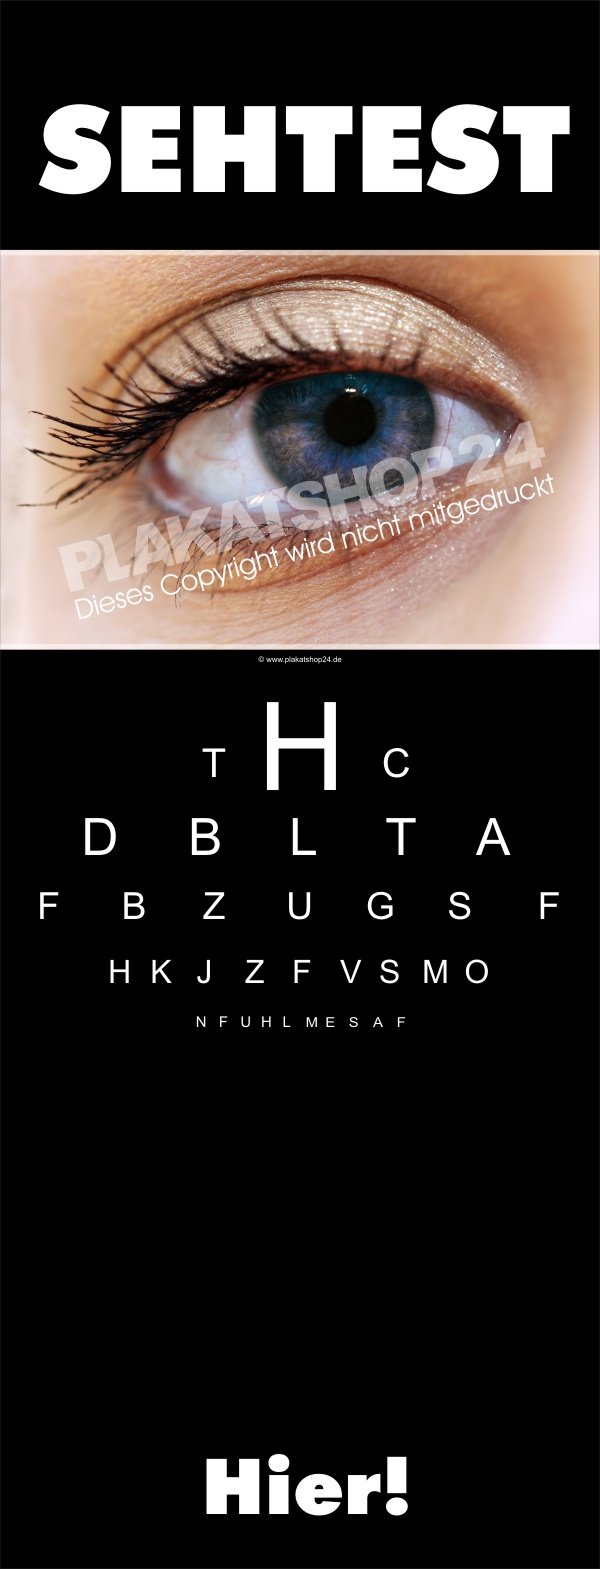 Sehtest-Banner für Sehtest-Werbung beim Augenoptiker